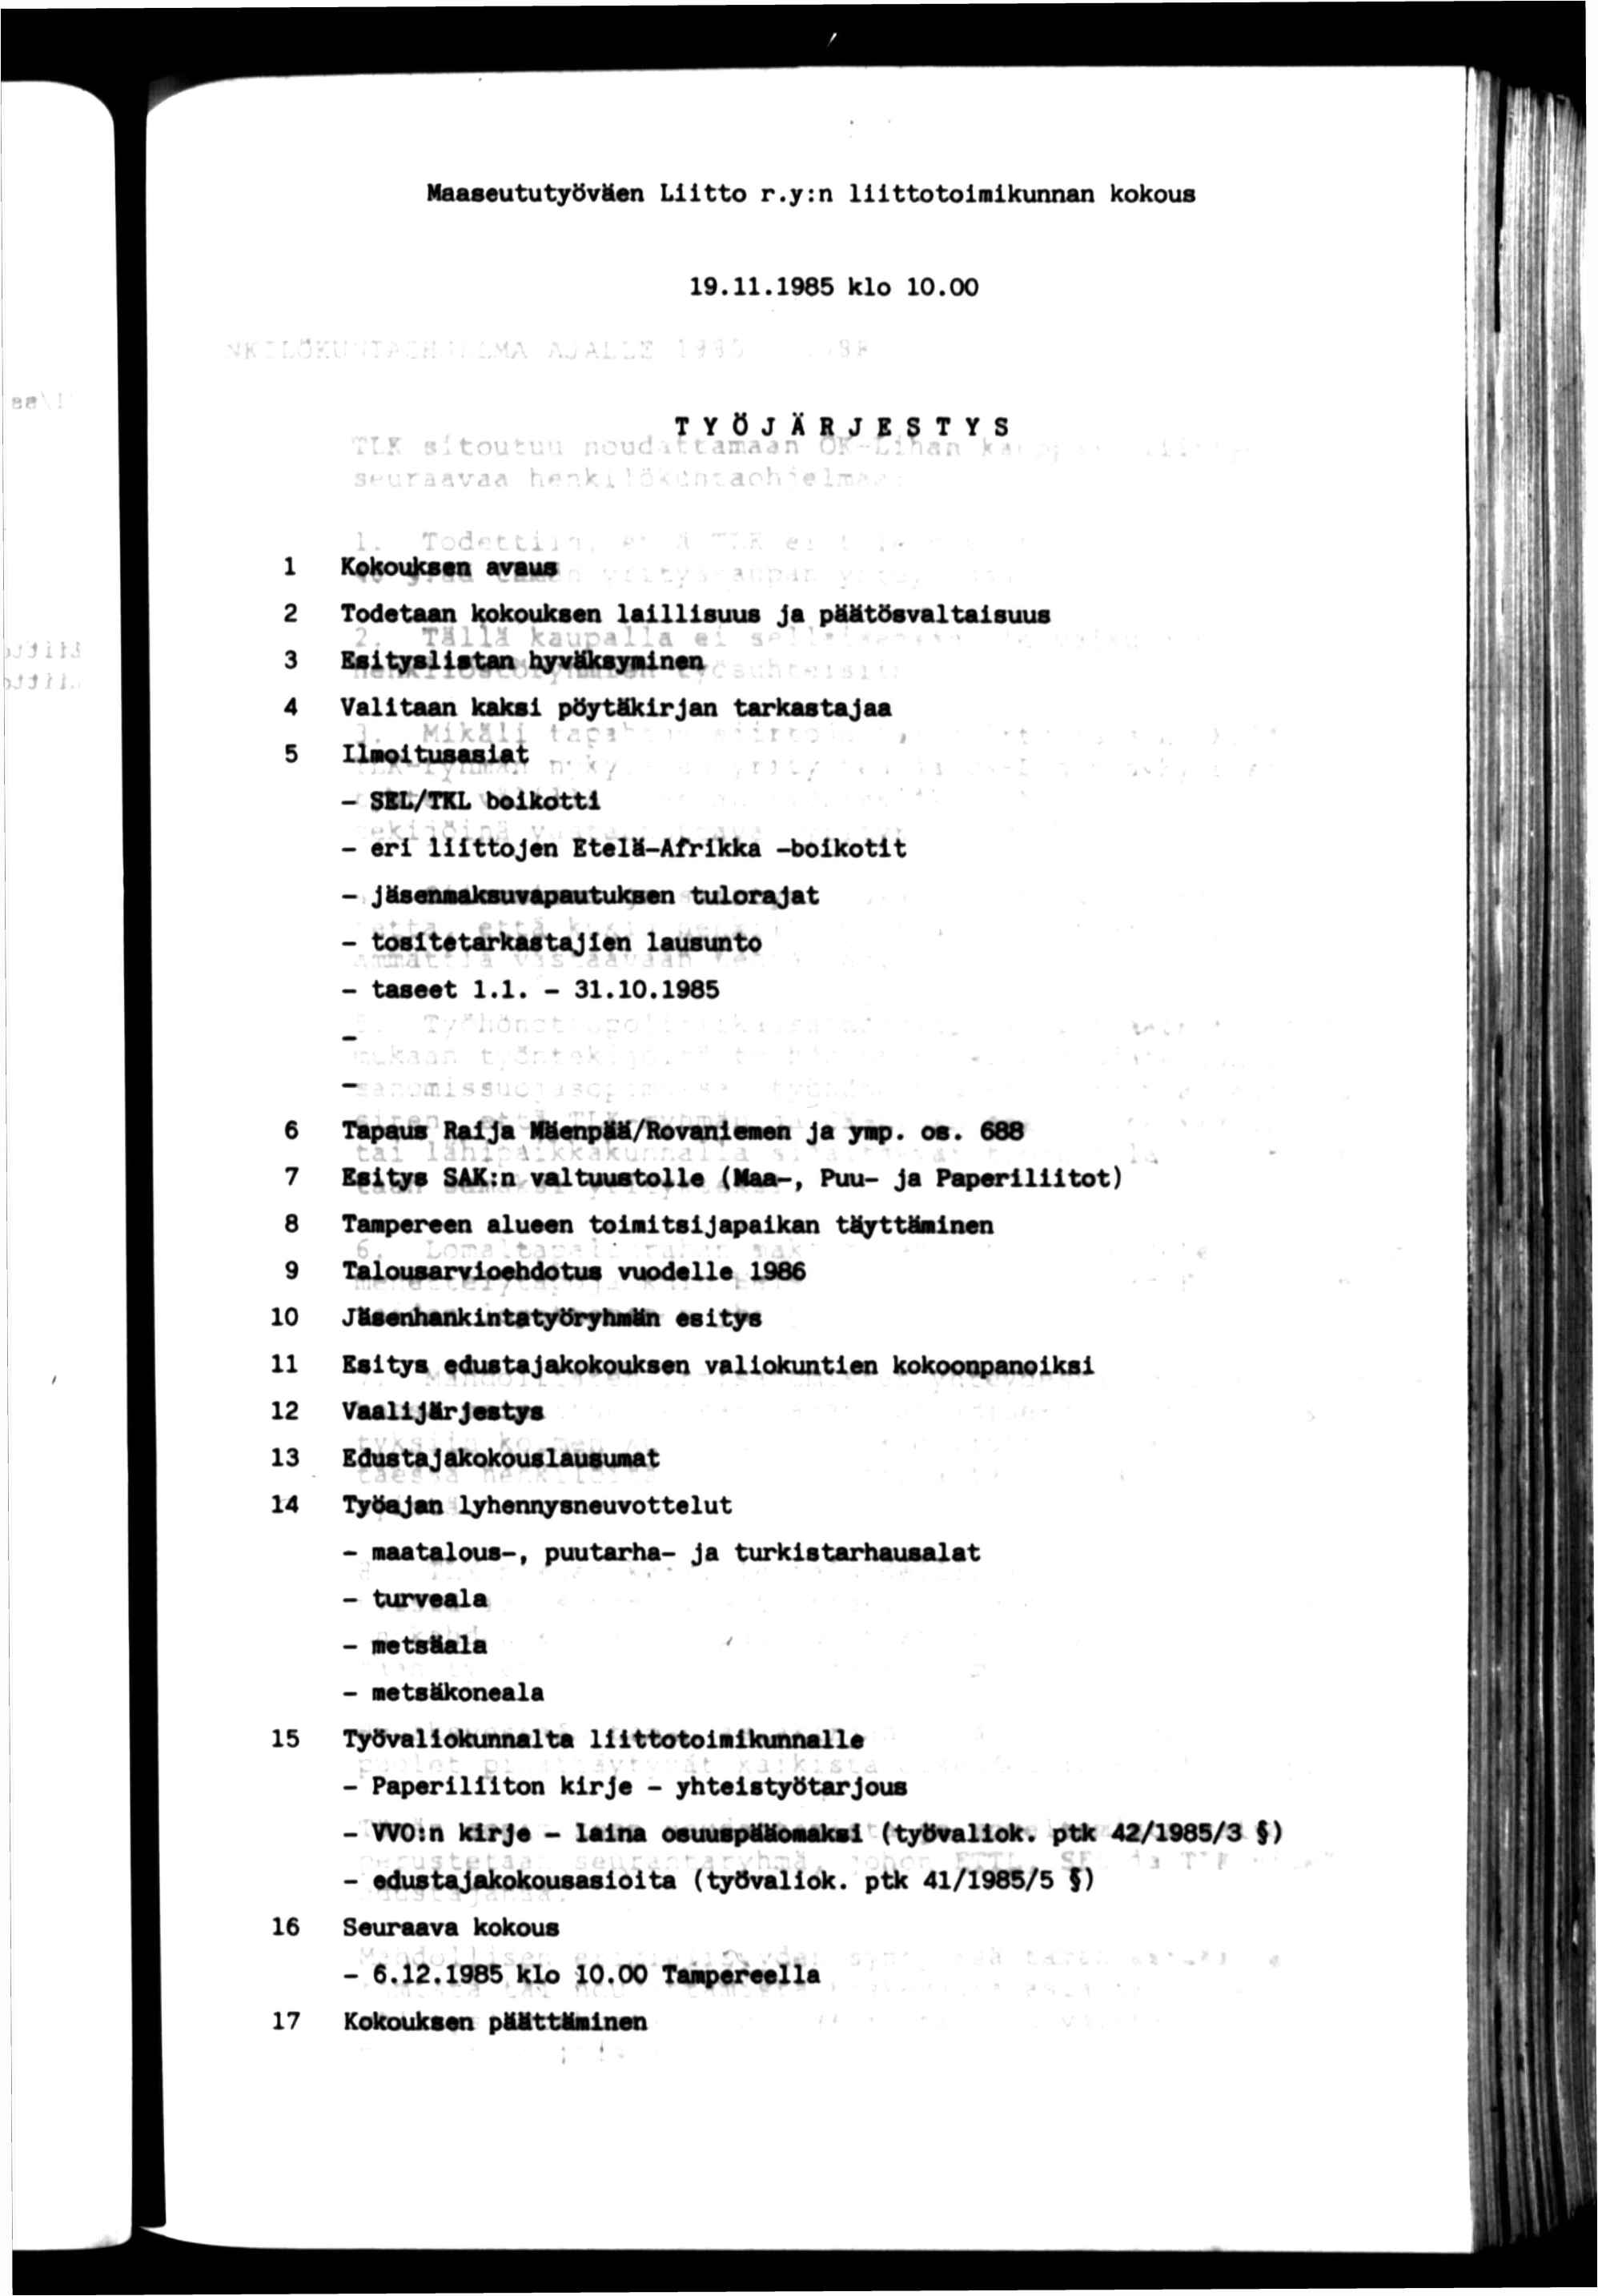 Mactfeututyöväen Ltto r.y:n lllttotolnlkunnan kokous 19.11.1985 klo 10.